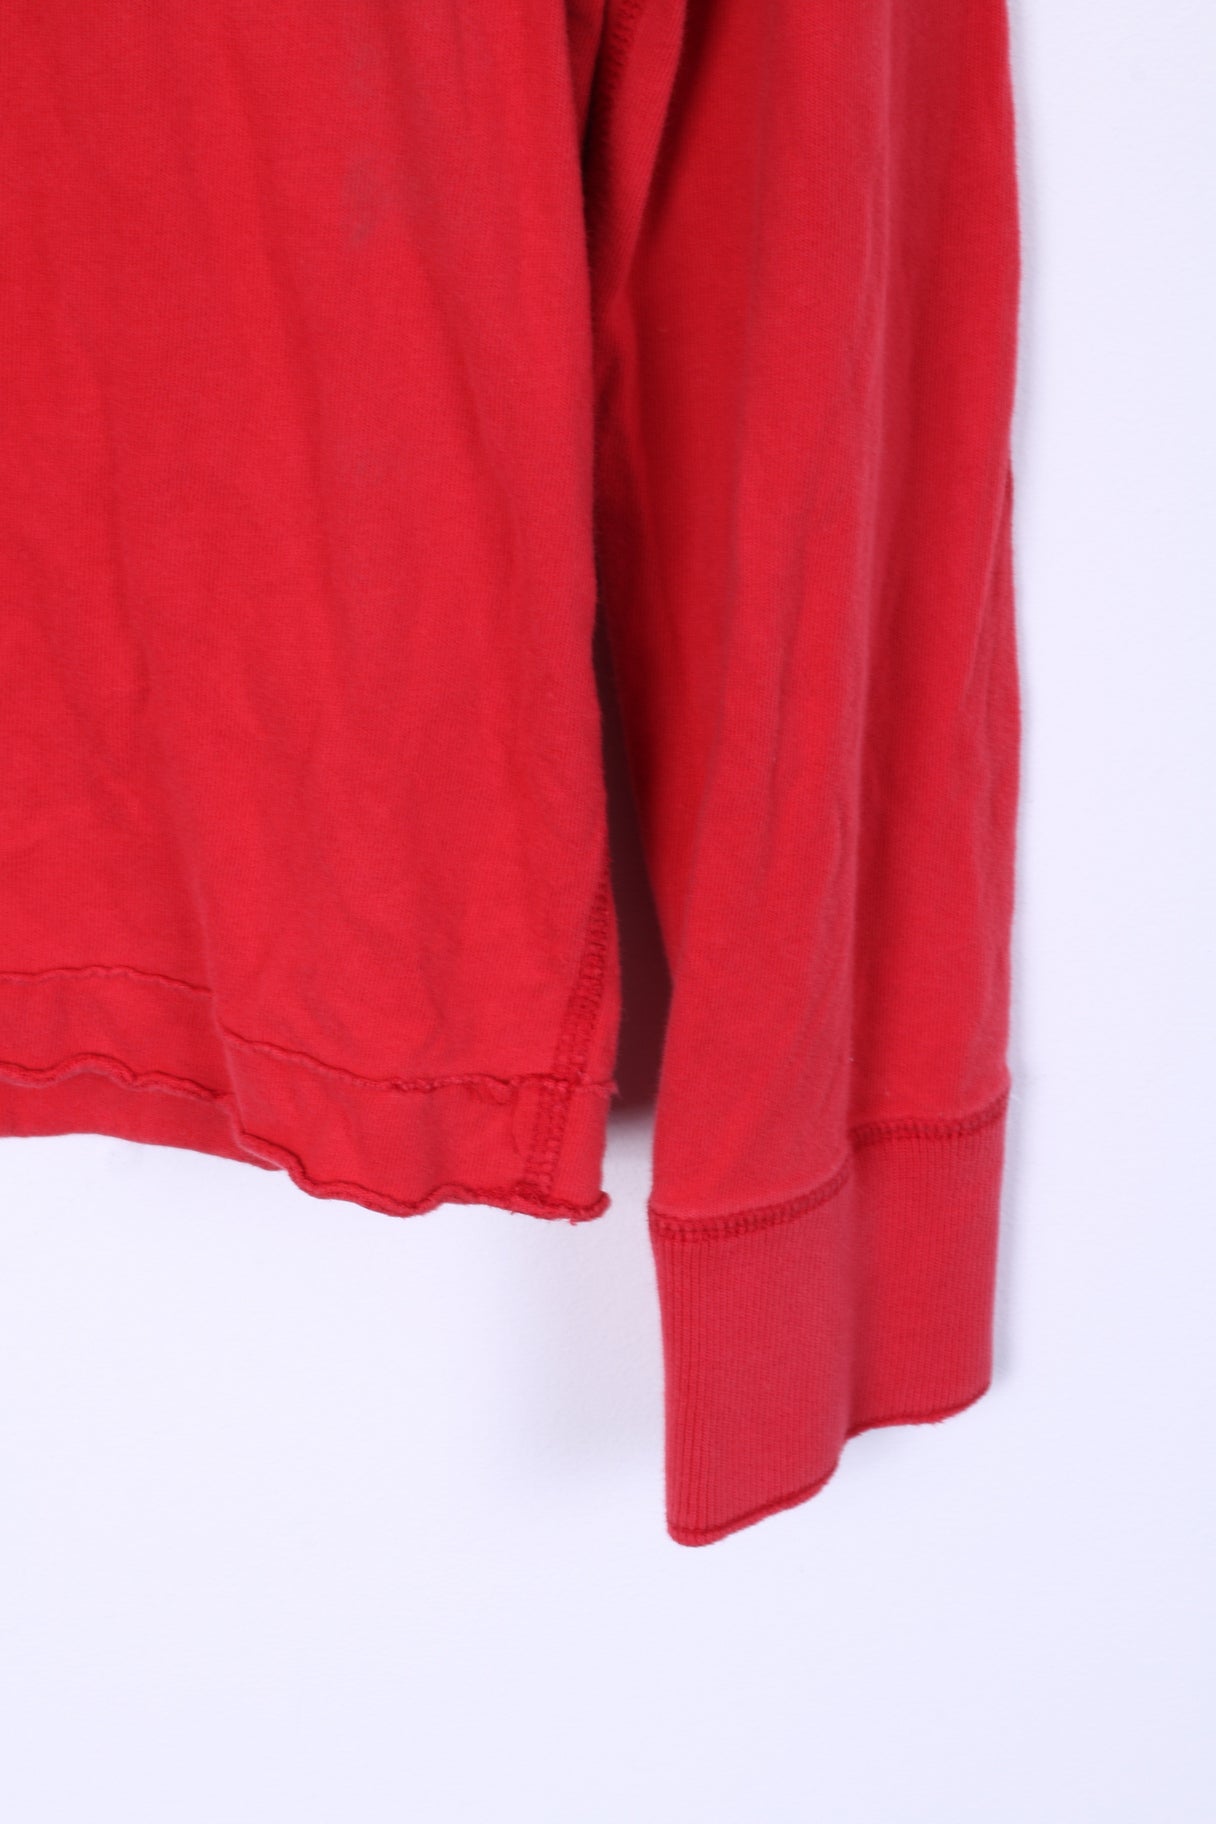 Hollister Chemise à manches longues pour hommes en coton rouge col rond brodé HCO